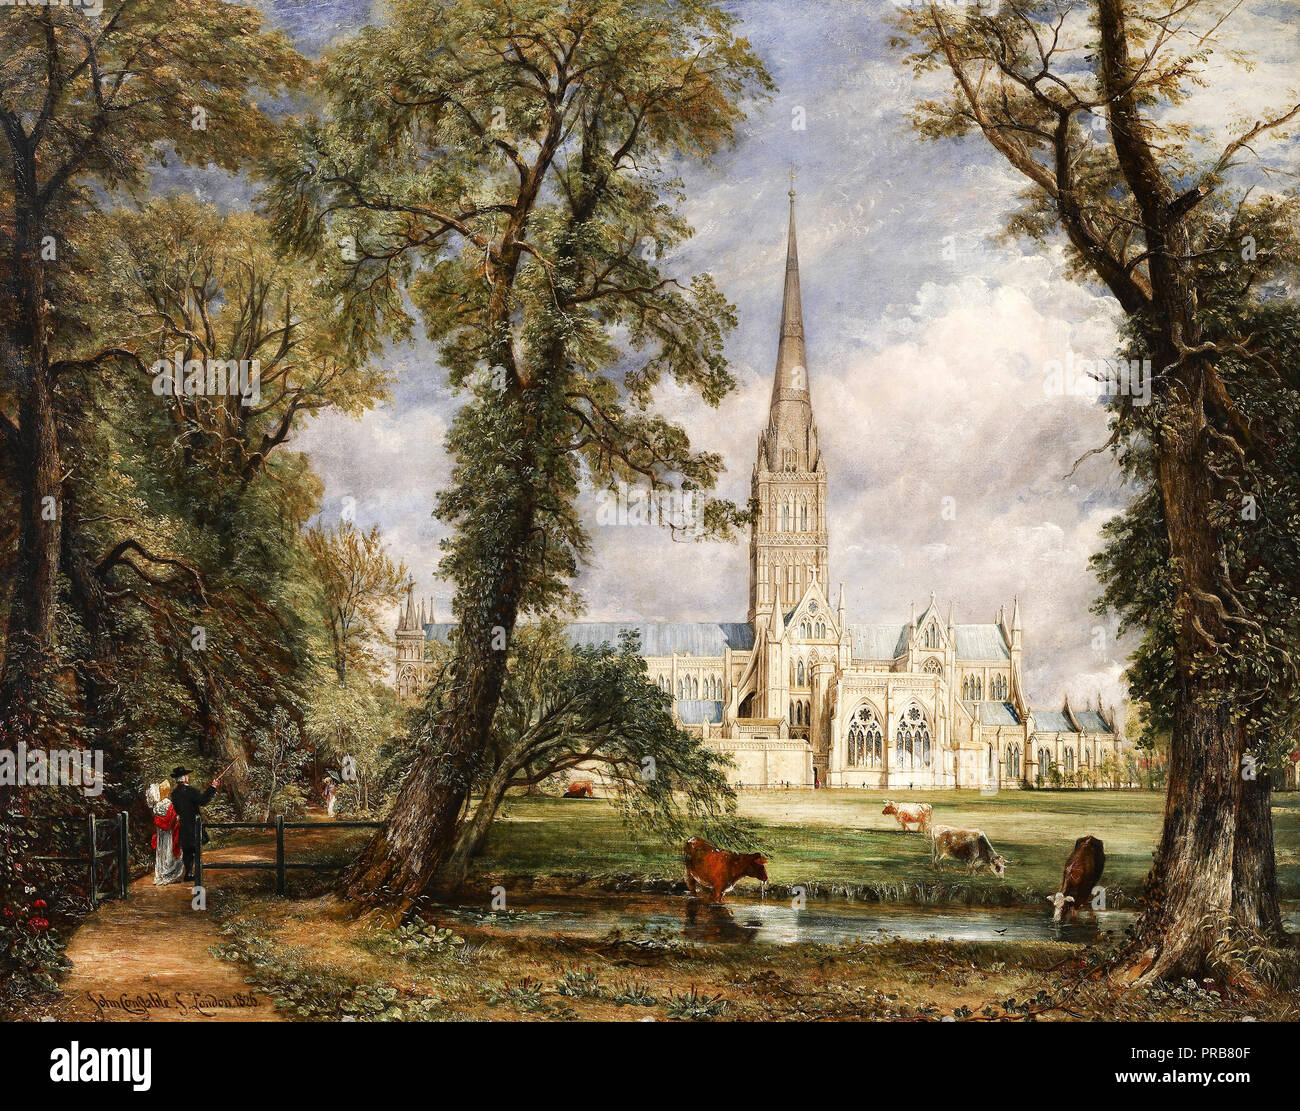 John Constable, Salisbury Kathedrale von des Bischofs Garten 1826 Öl auf Leinwand, Frick Collection, New York, USA. Stockfoto